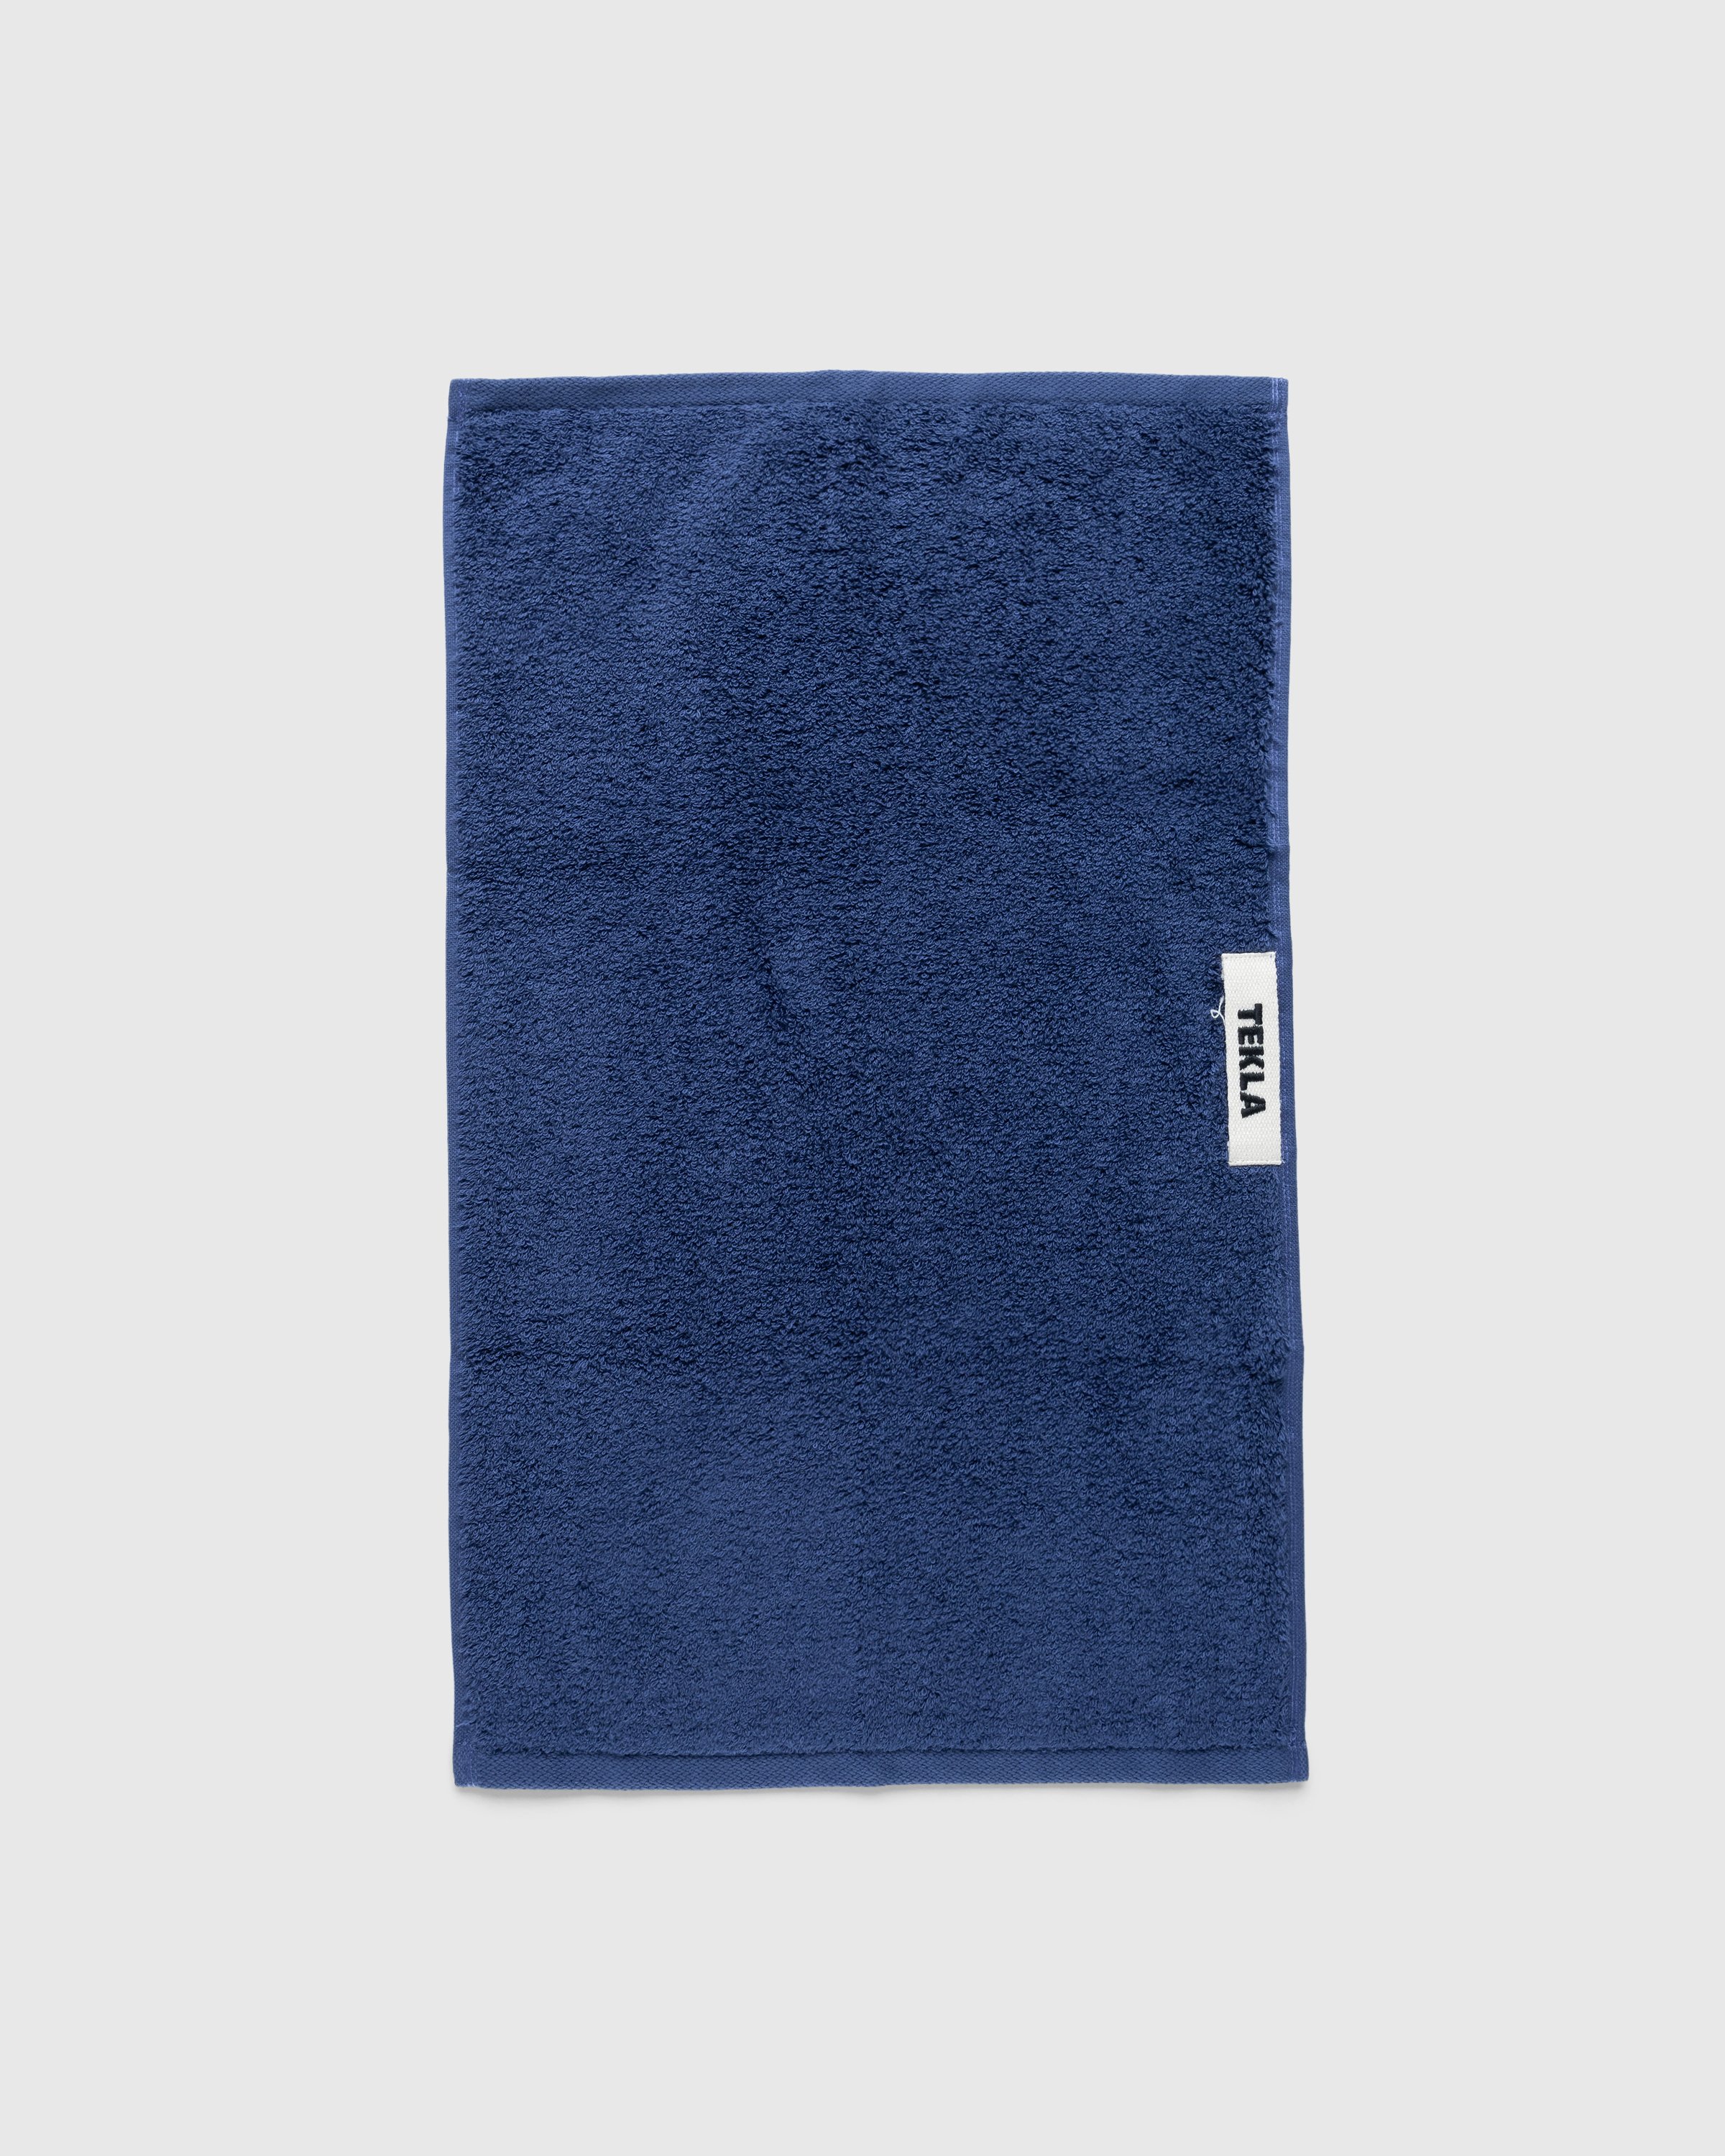 Tekla - Guest Towel 30x50 Navy - Lifestyle - Blue - Image 2